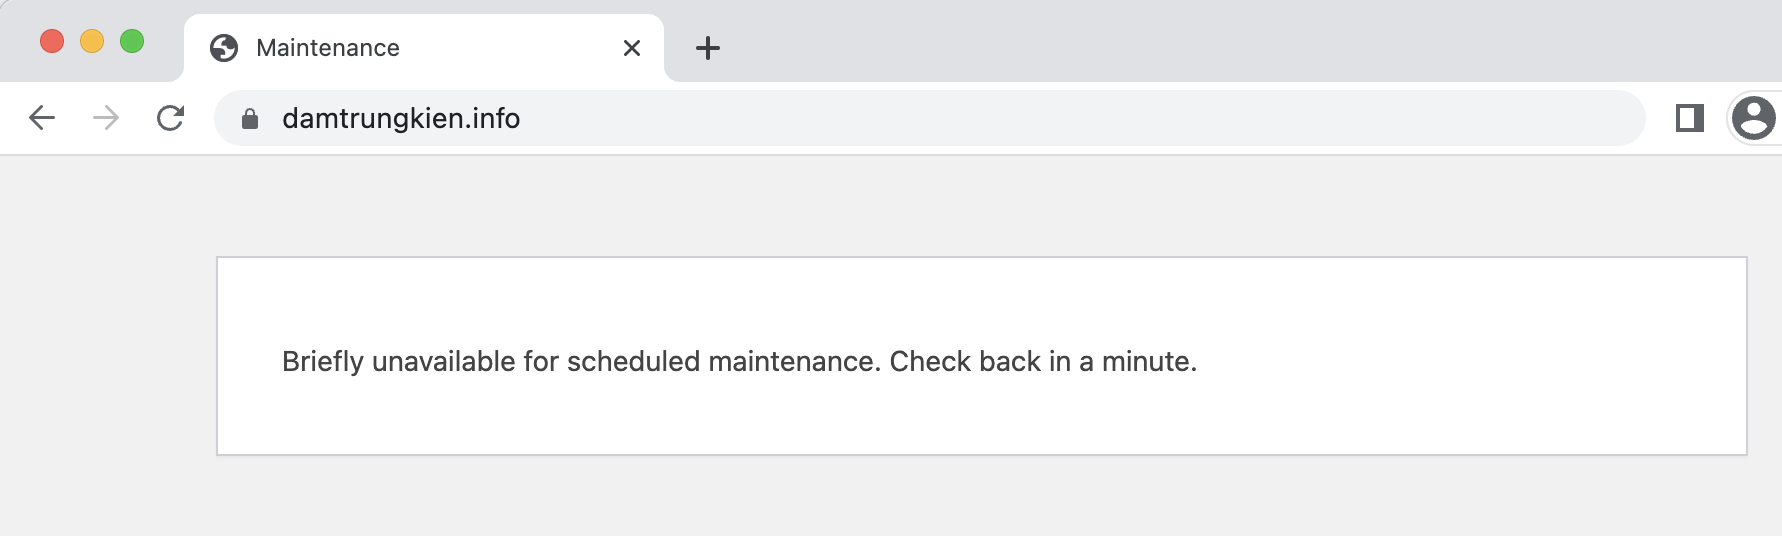 Xử lý cảnh báo Briefly unavailable for scheduled maintenance trên WordPress